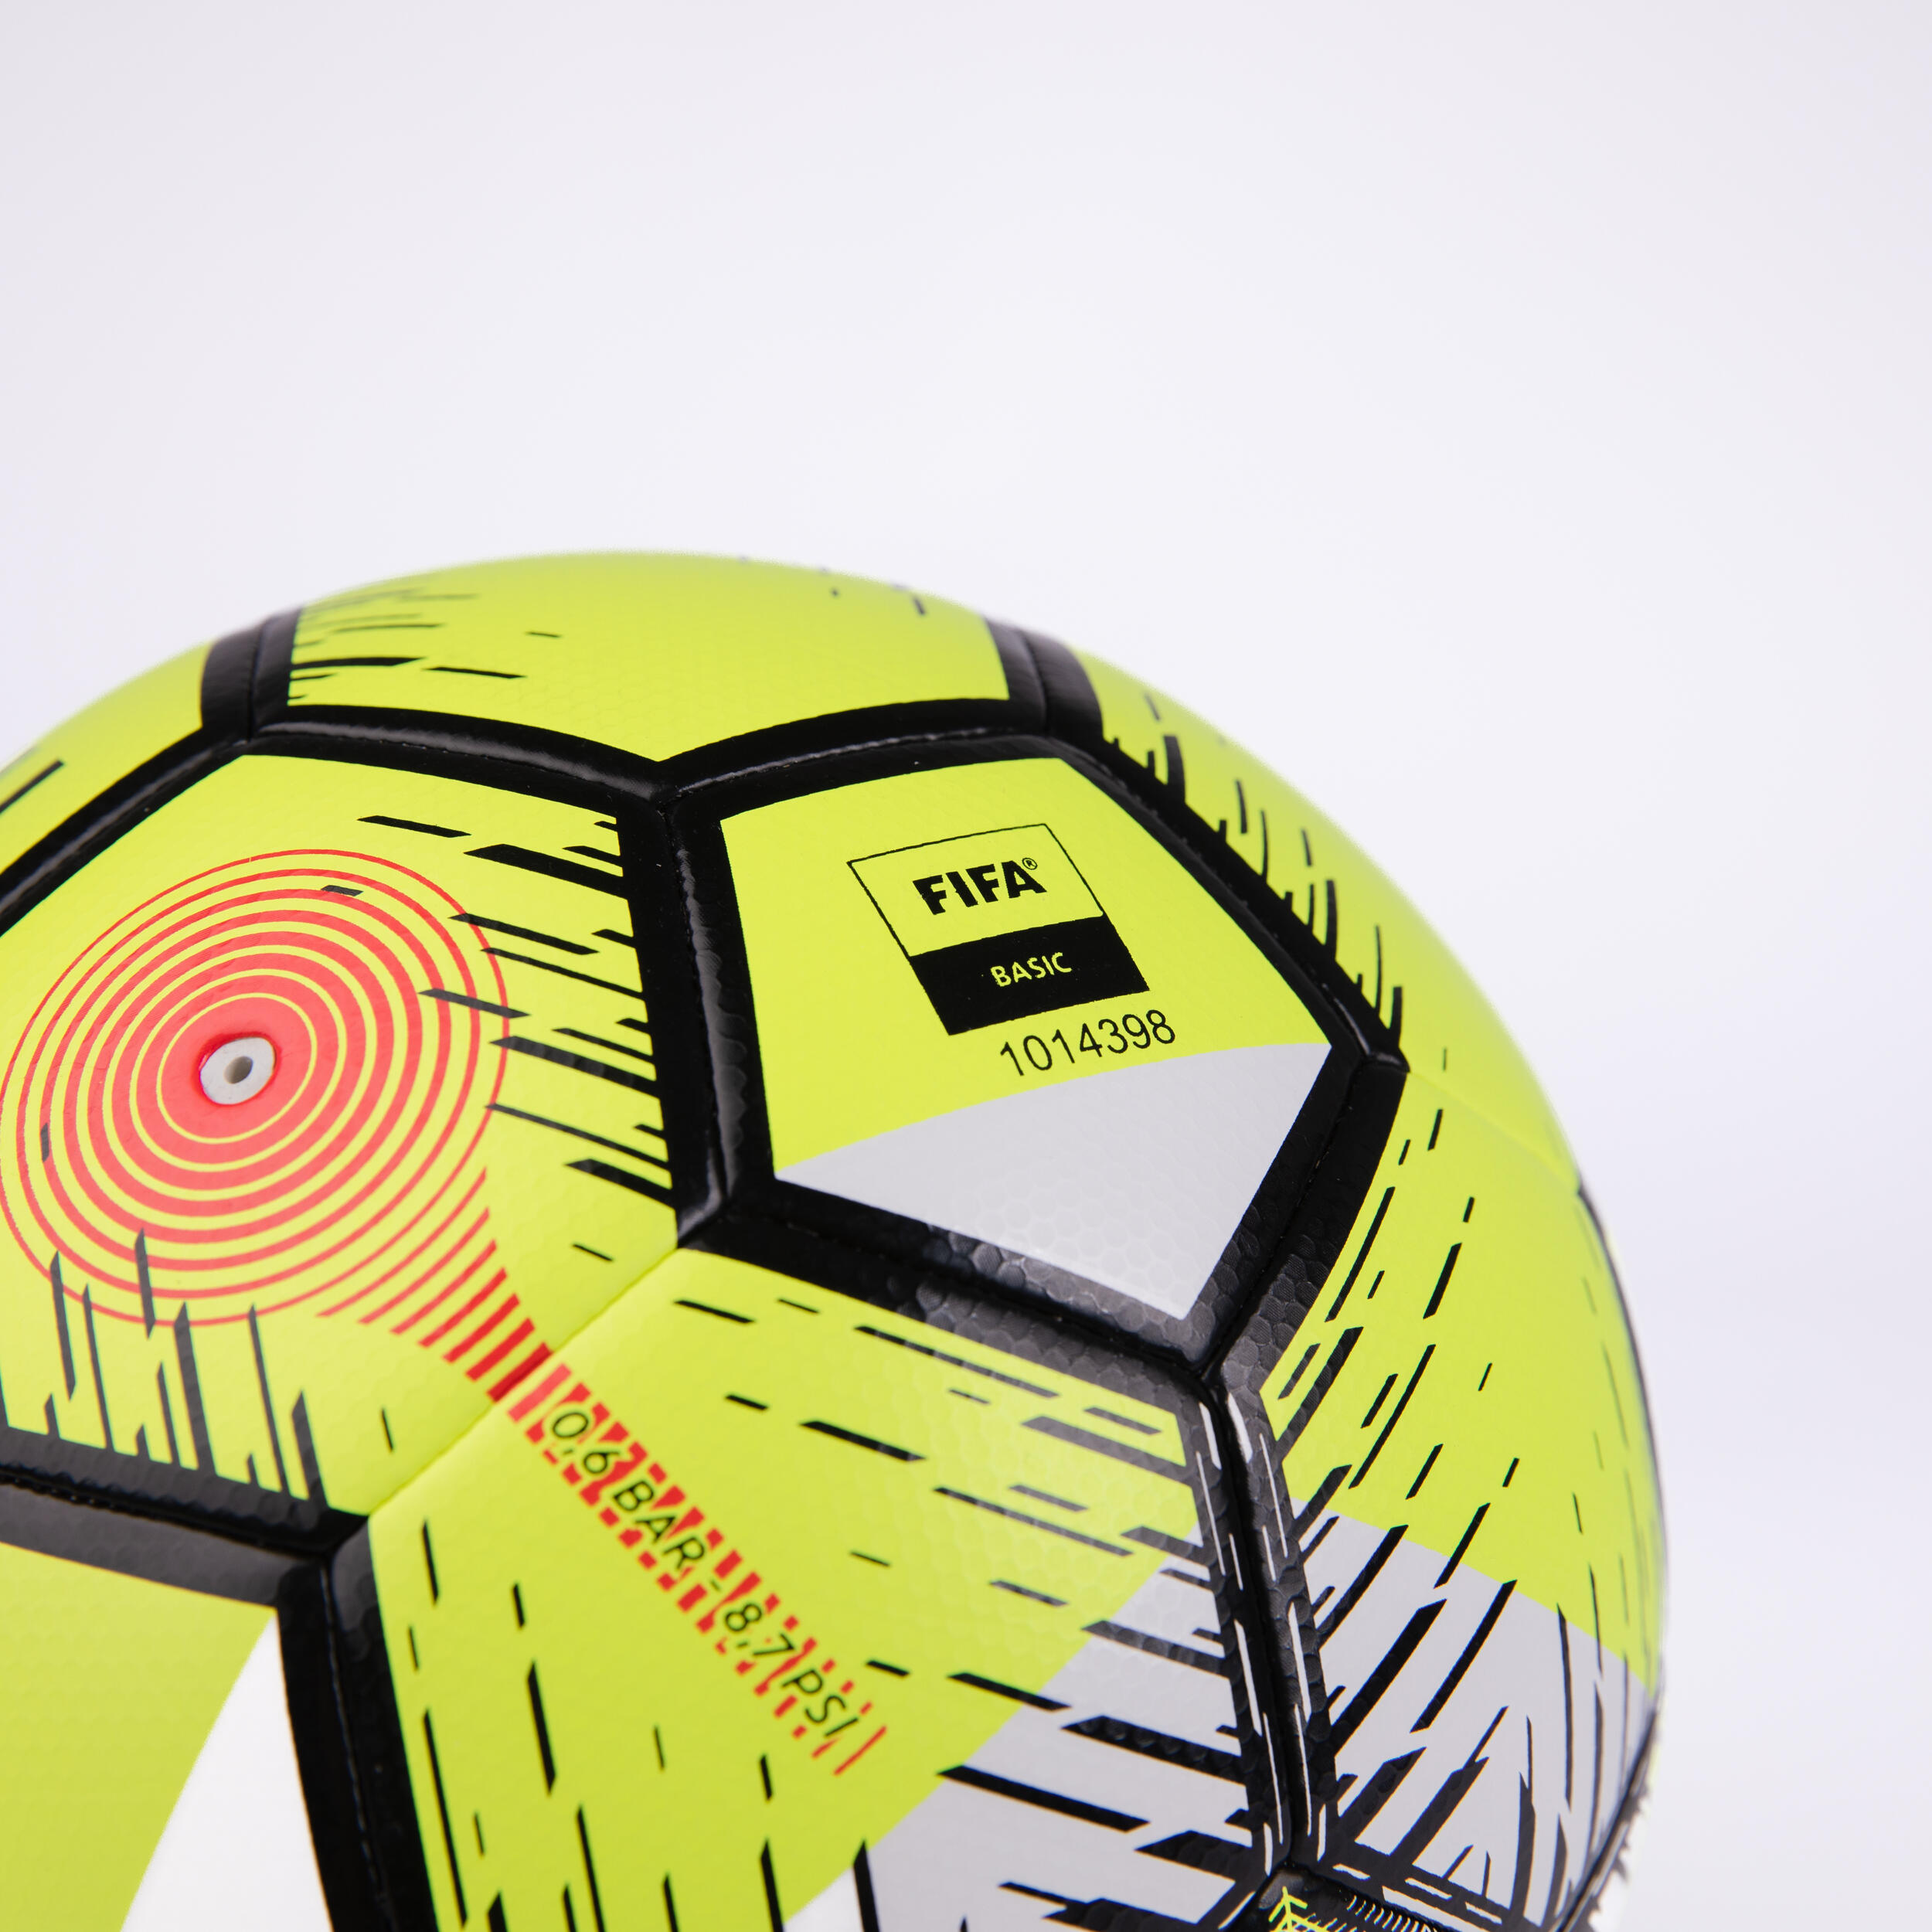 Ballon de futsal – Club FIFA basic - KIPSTA